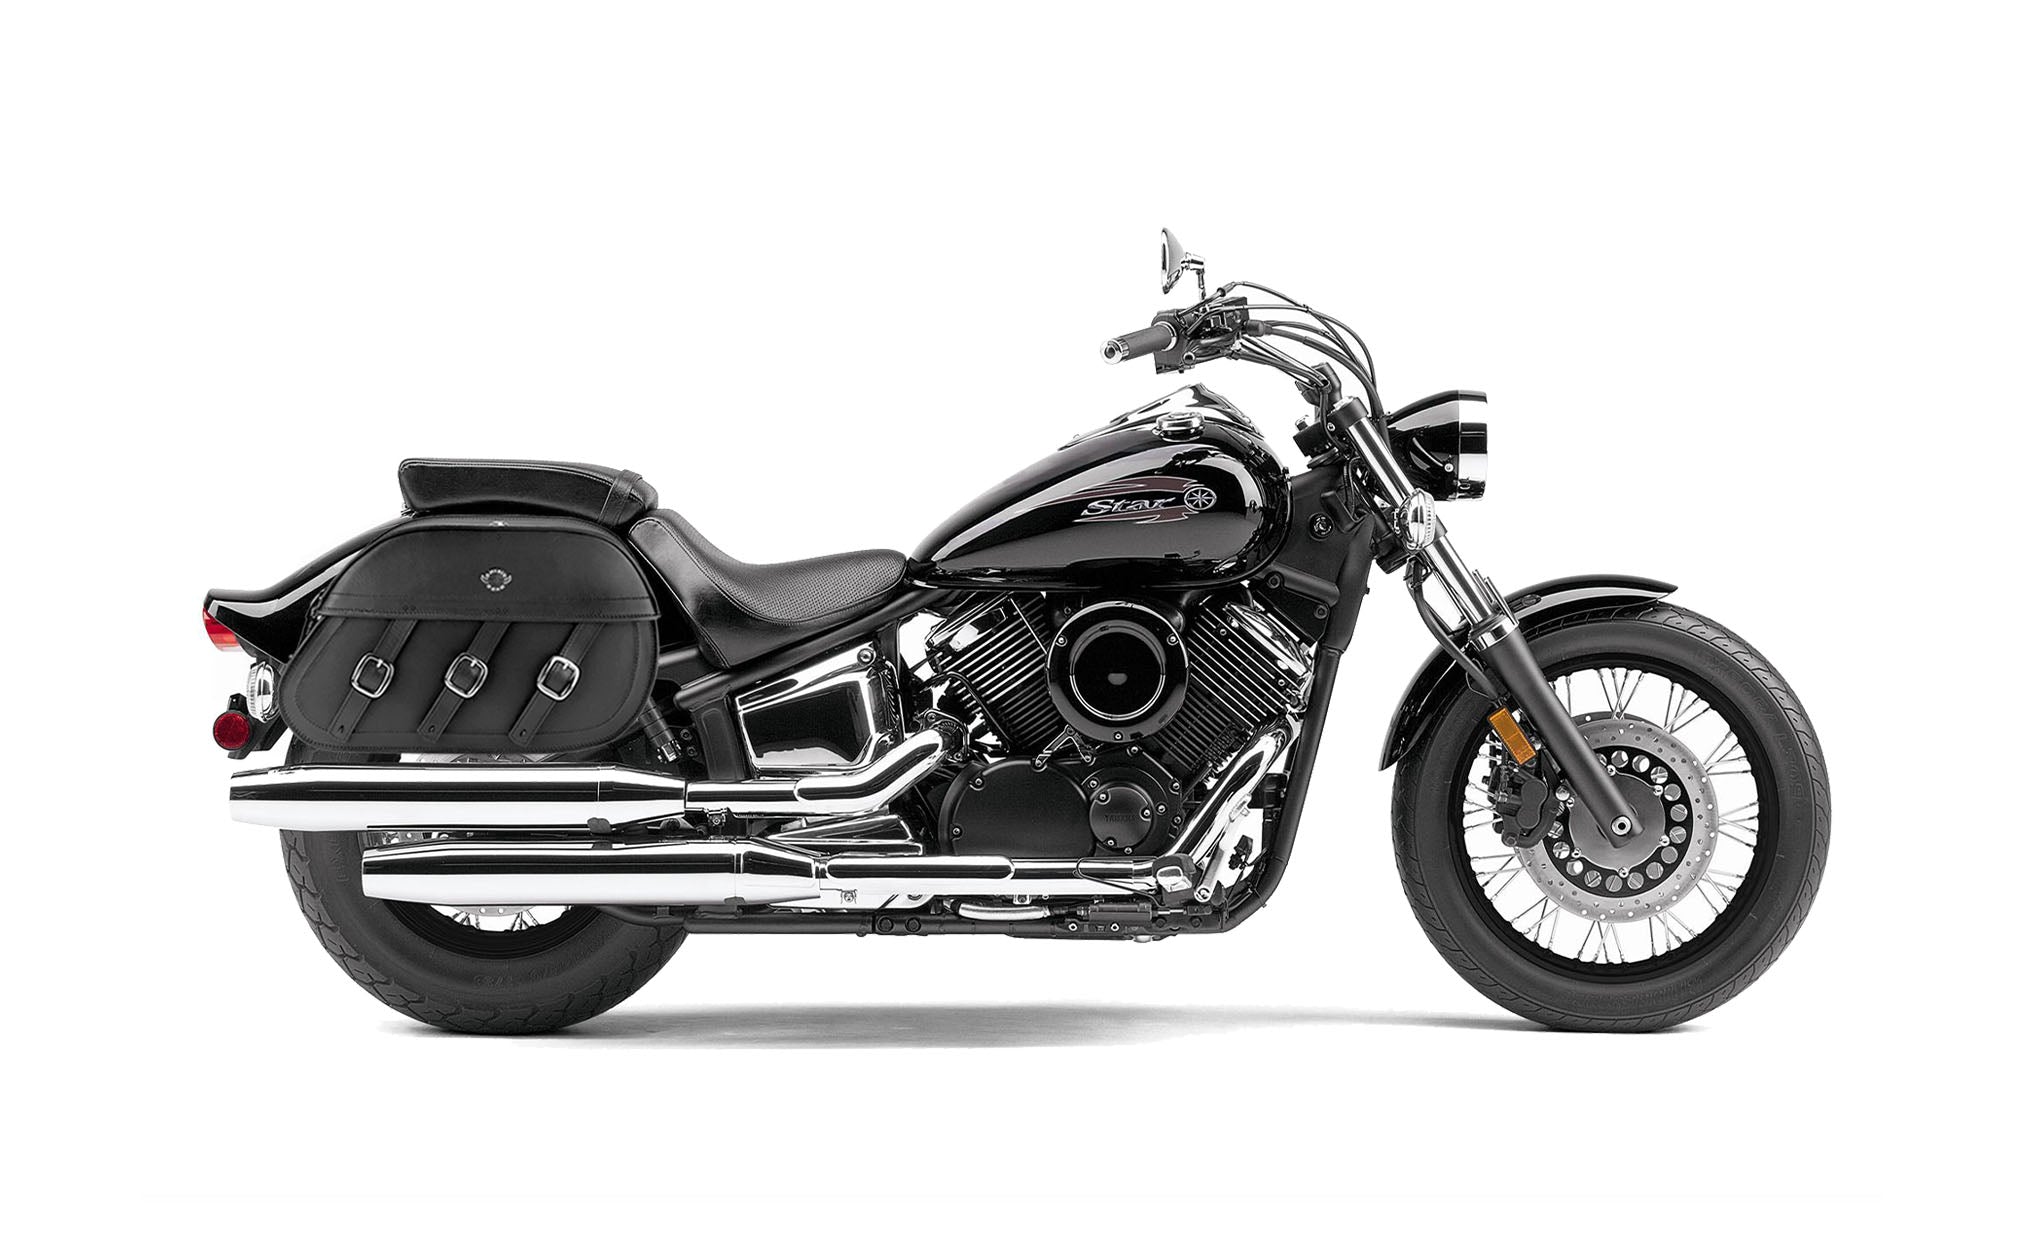 Viking Trianon Extra Large Yamaha V Star 1100 Custom Xvs11T Leather Motorcycle Saddlebags on Bike Photo @expand